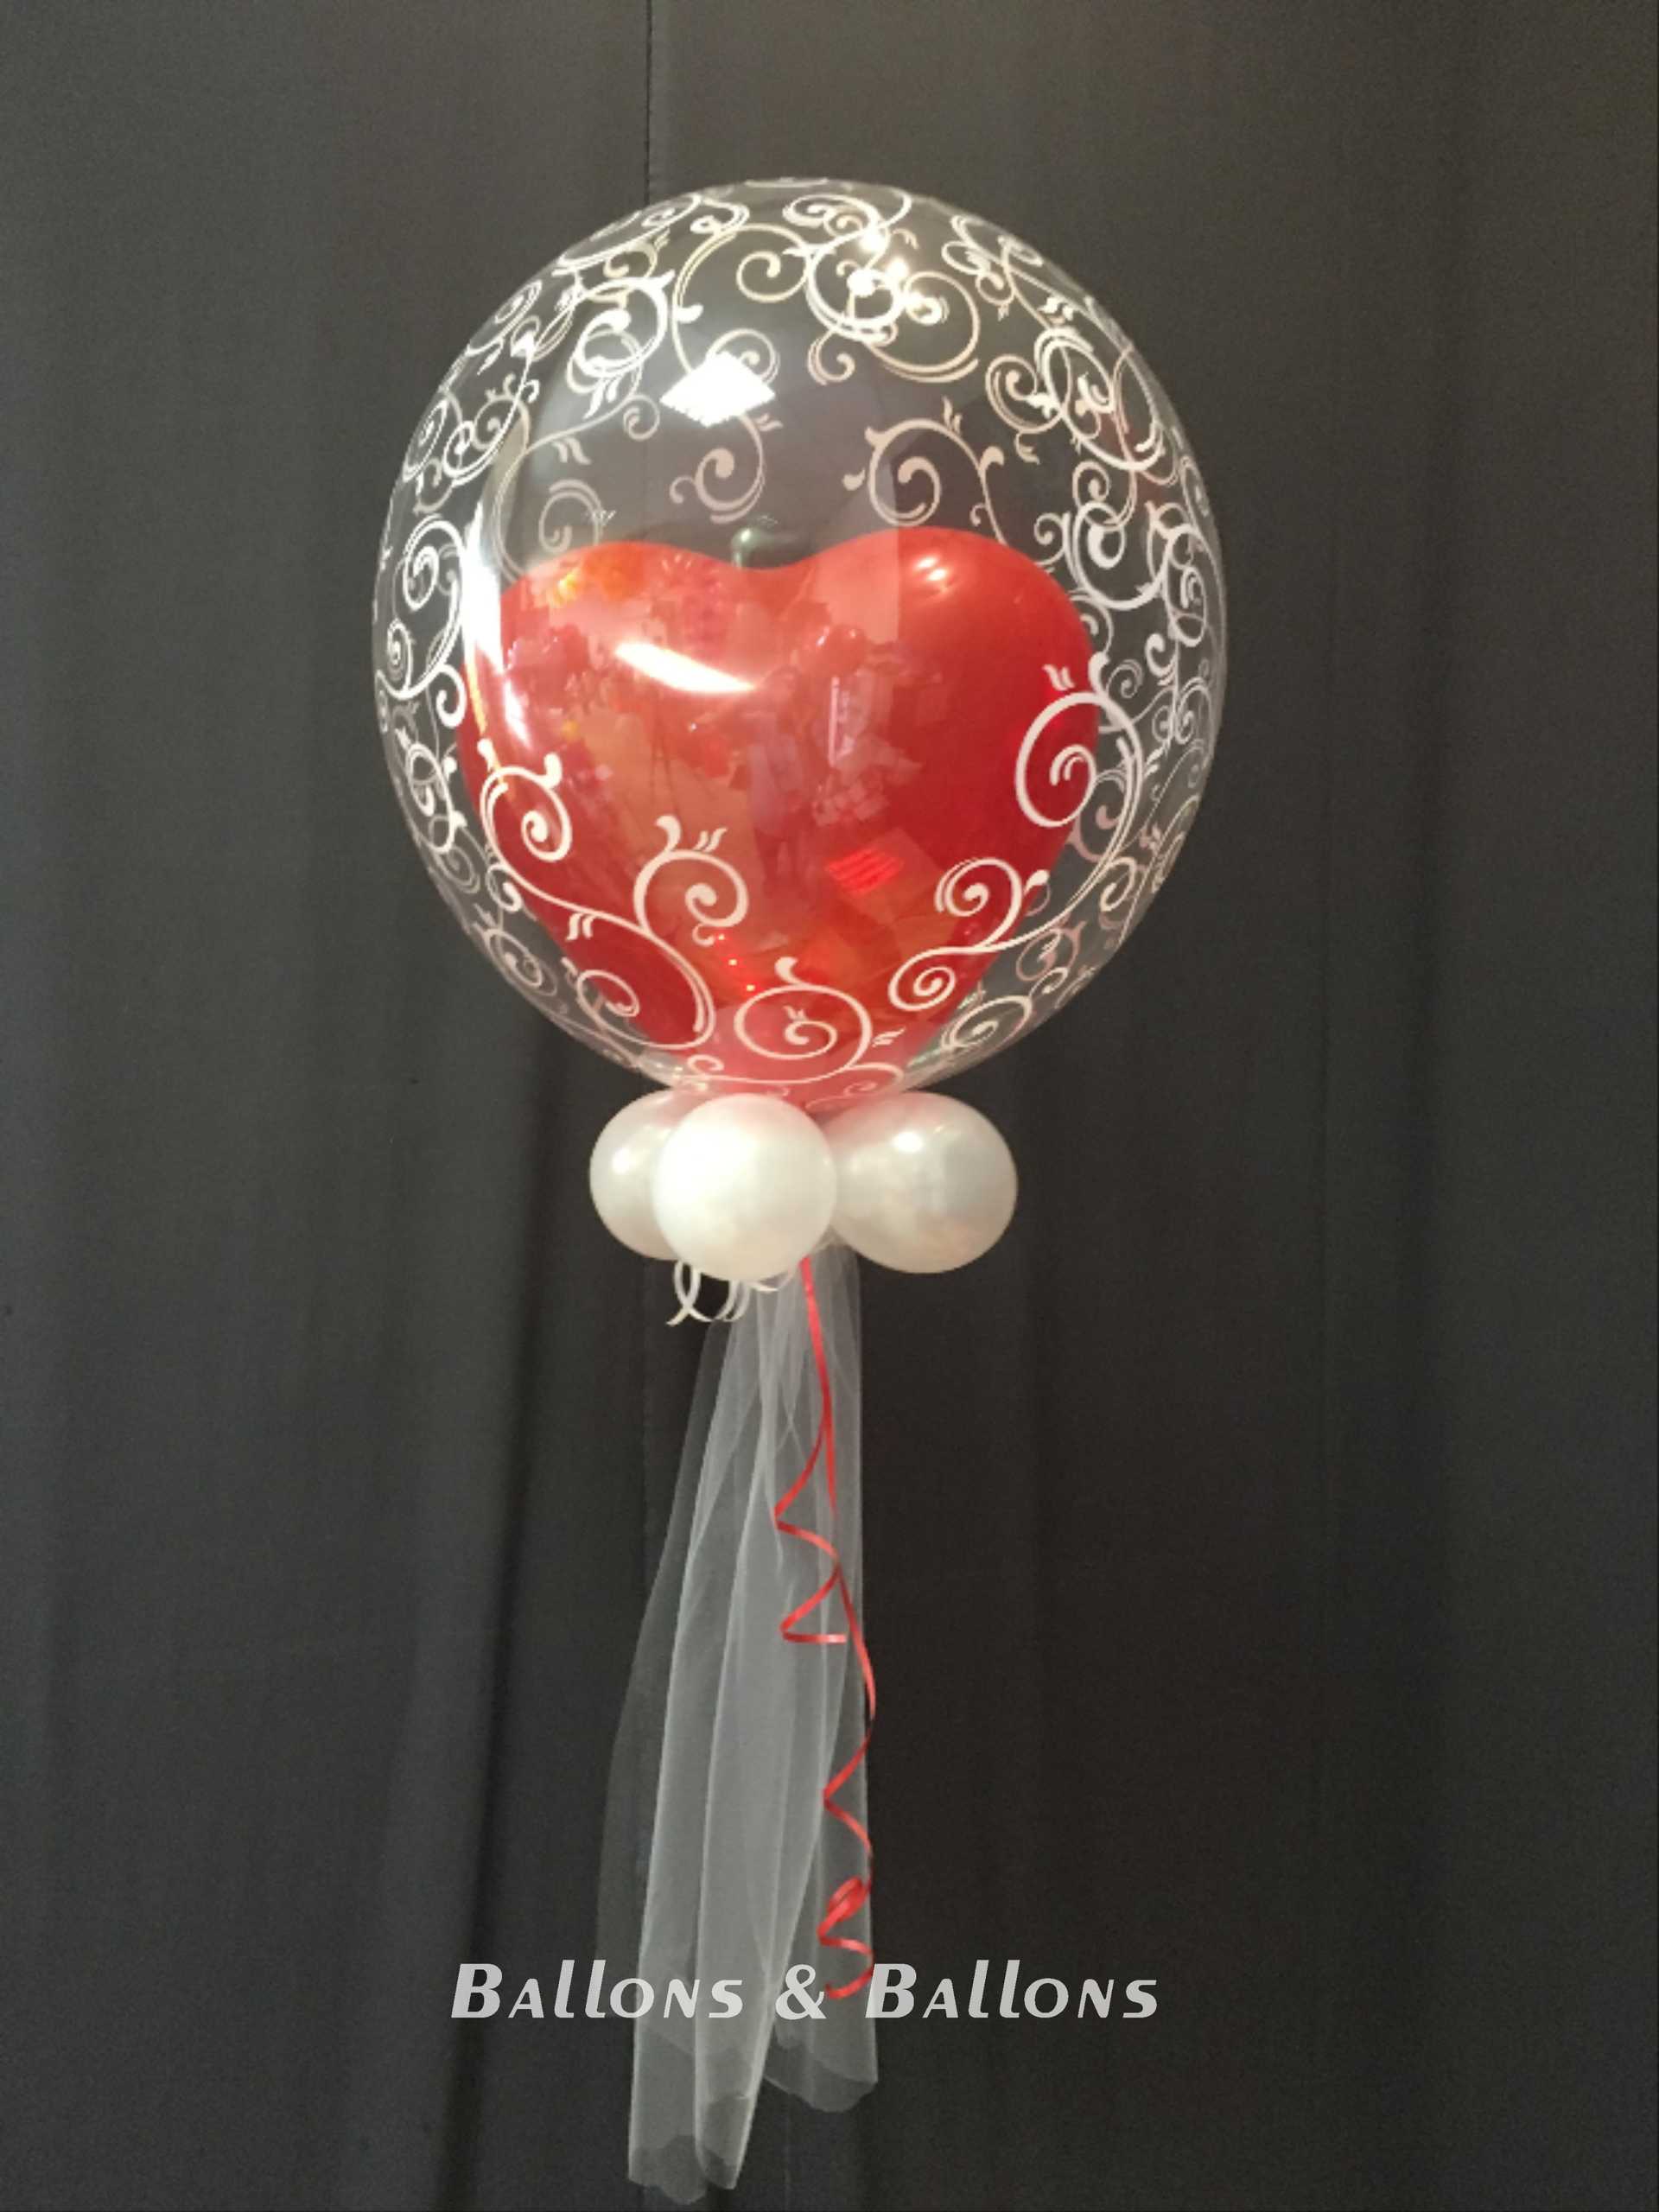 Ein Ballon mit roten Herzen in einem durchsichtigen Ballon.